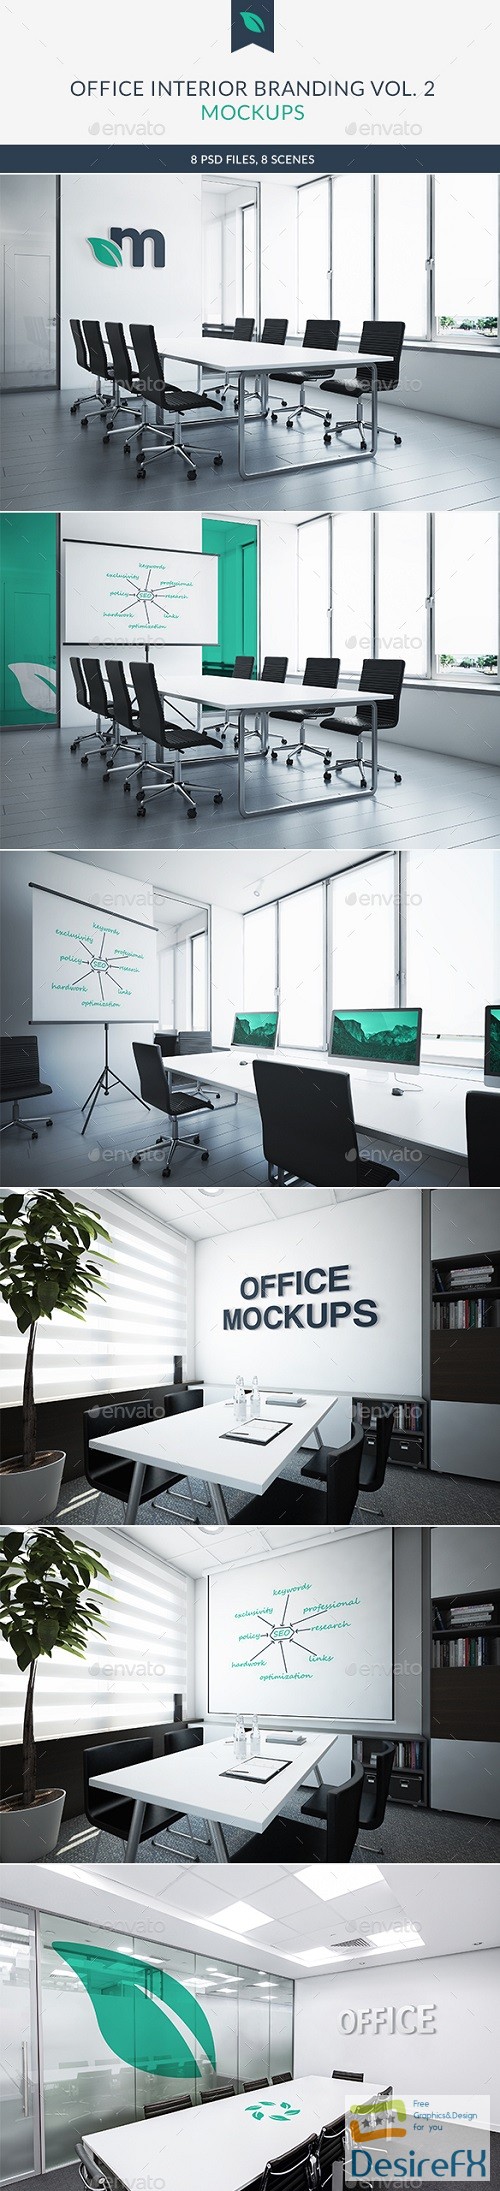 Download Desirefx.com | Download Office Interior Branding Mockups ...